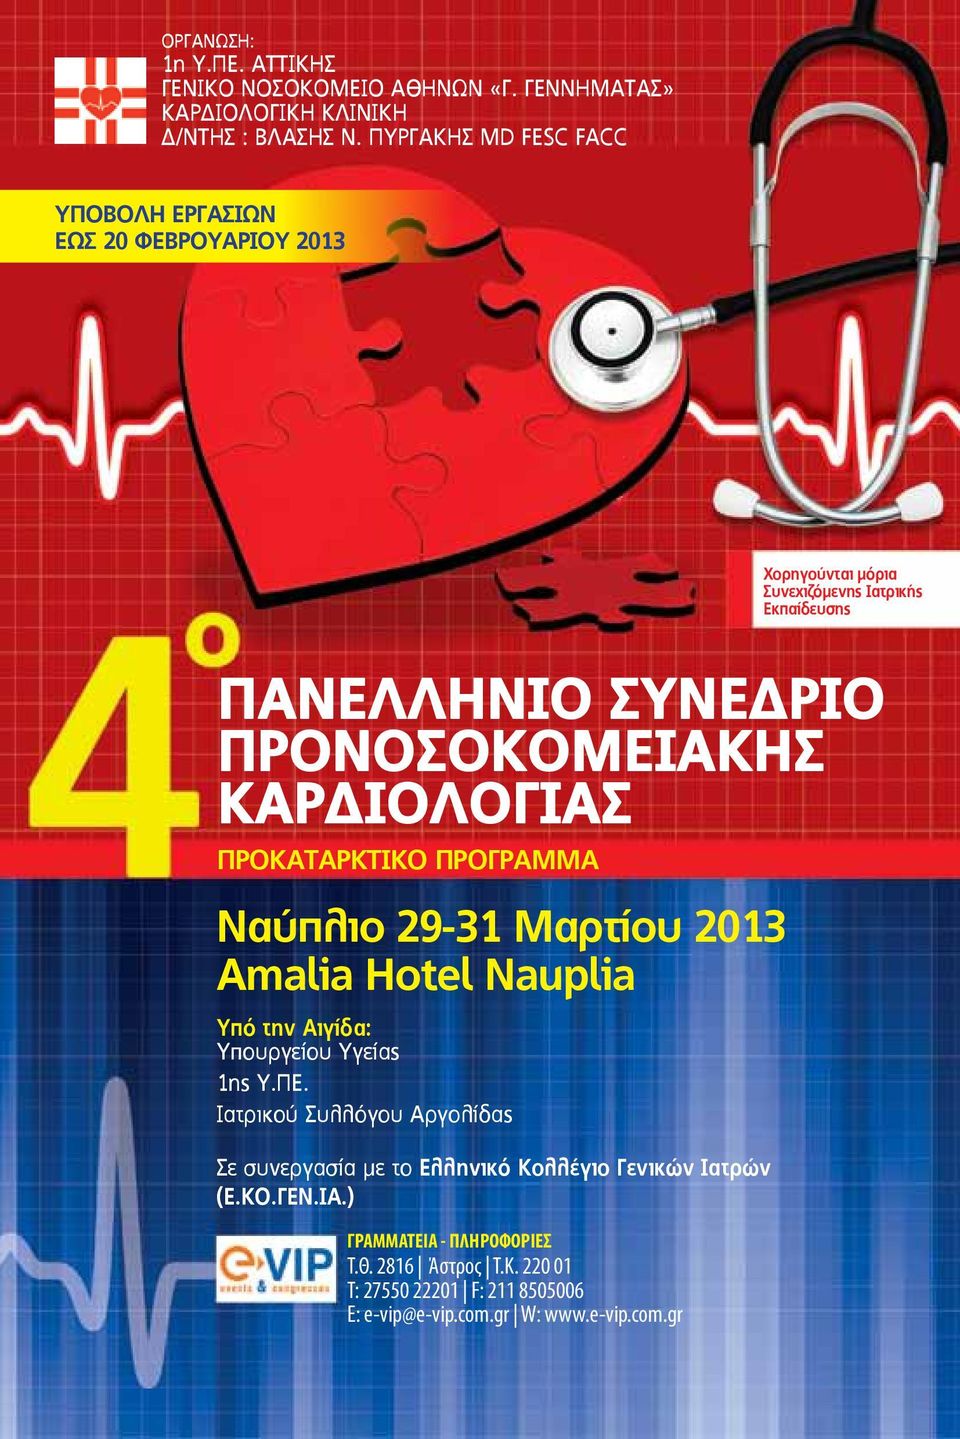 ΚΑΡΔΙΟΛΟΓΙΑΣ ΠΡΟΚΑΤΑΡΚΤΙΚΟ ΠΡΟΓΡΑΜΜΑ Ναύπλιο 29-31 Mαρτίου 2013 Αmalia Hotel Νauplia Υπό την Αιγίδα: Υπουργείου Υγείας 1ης Υ.ΠΕ.